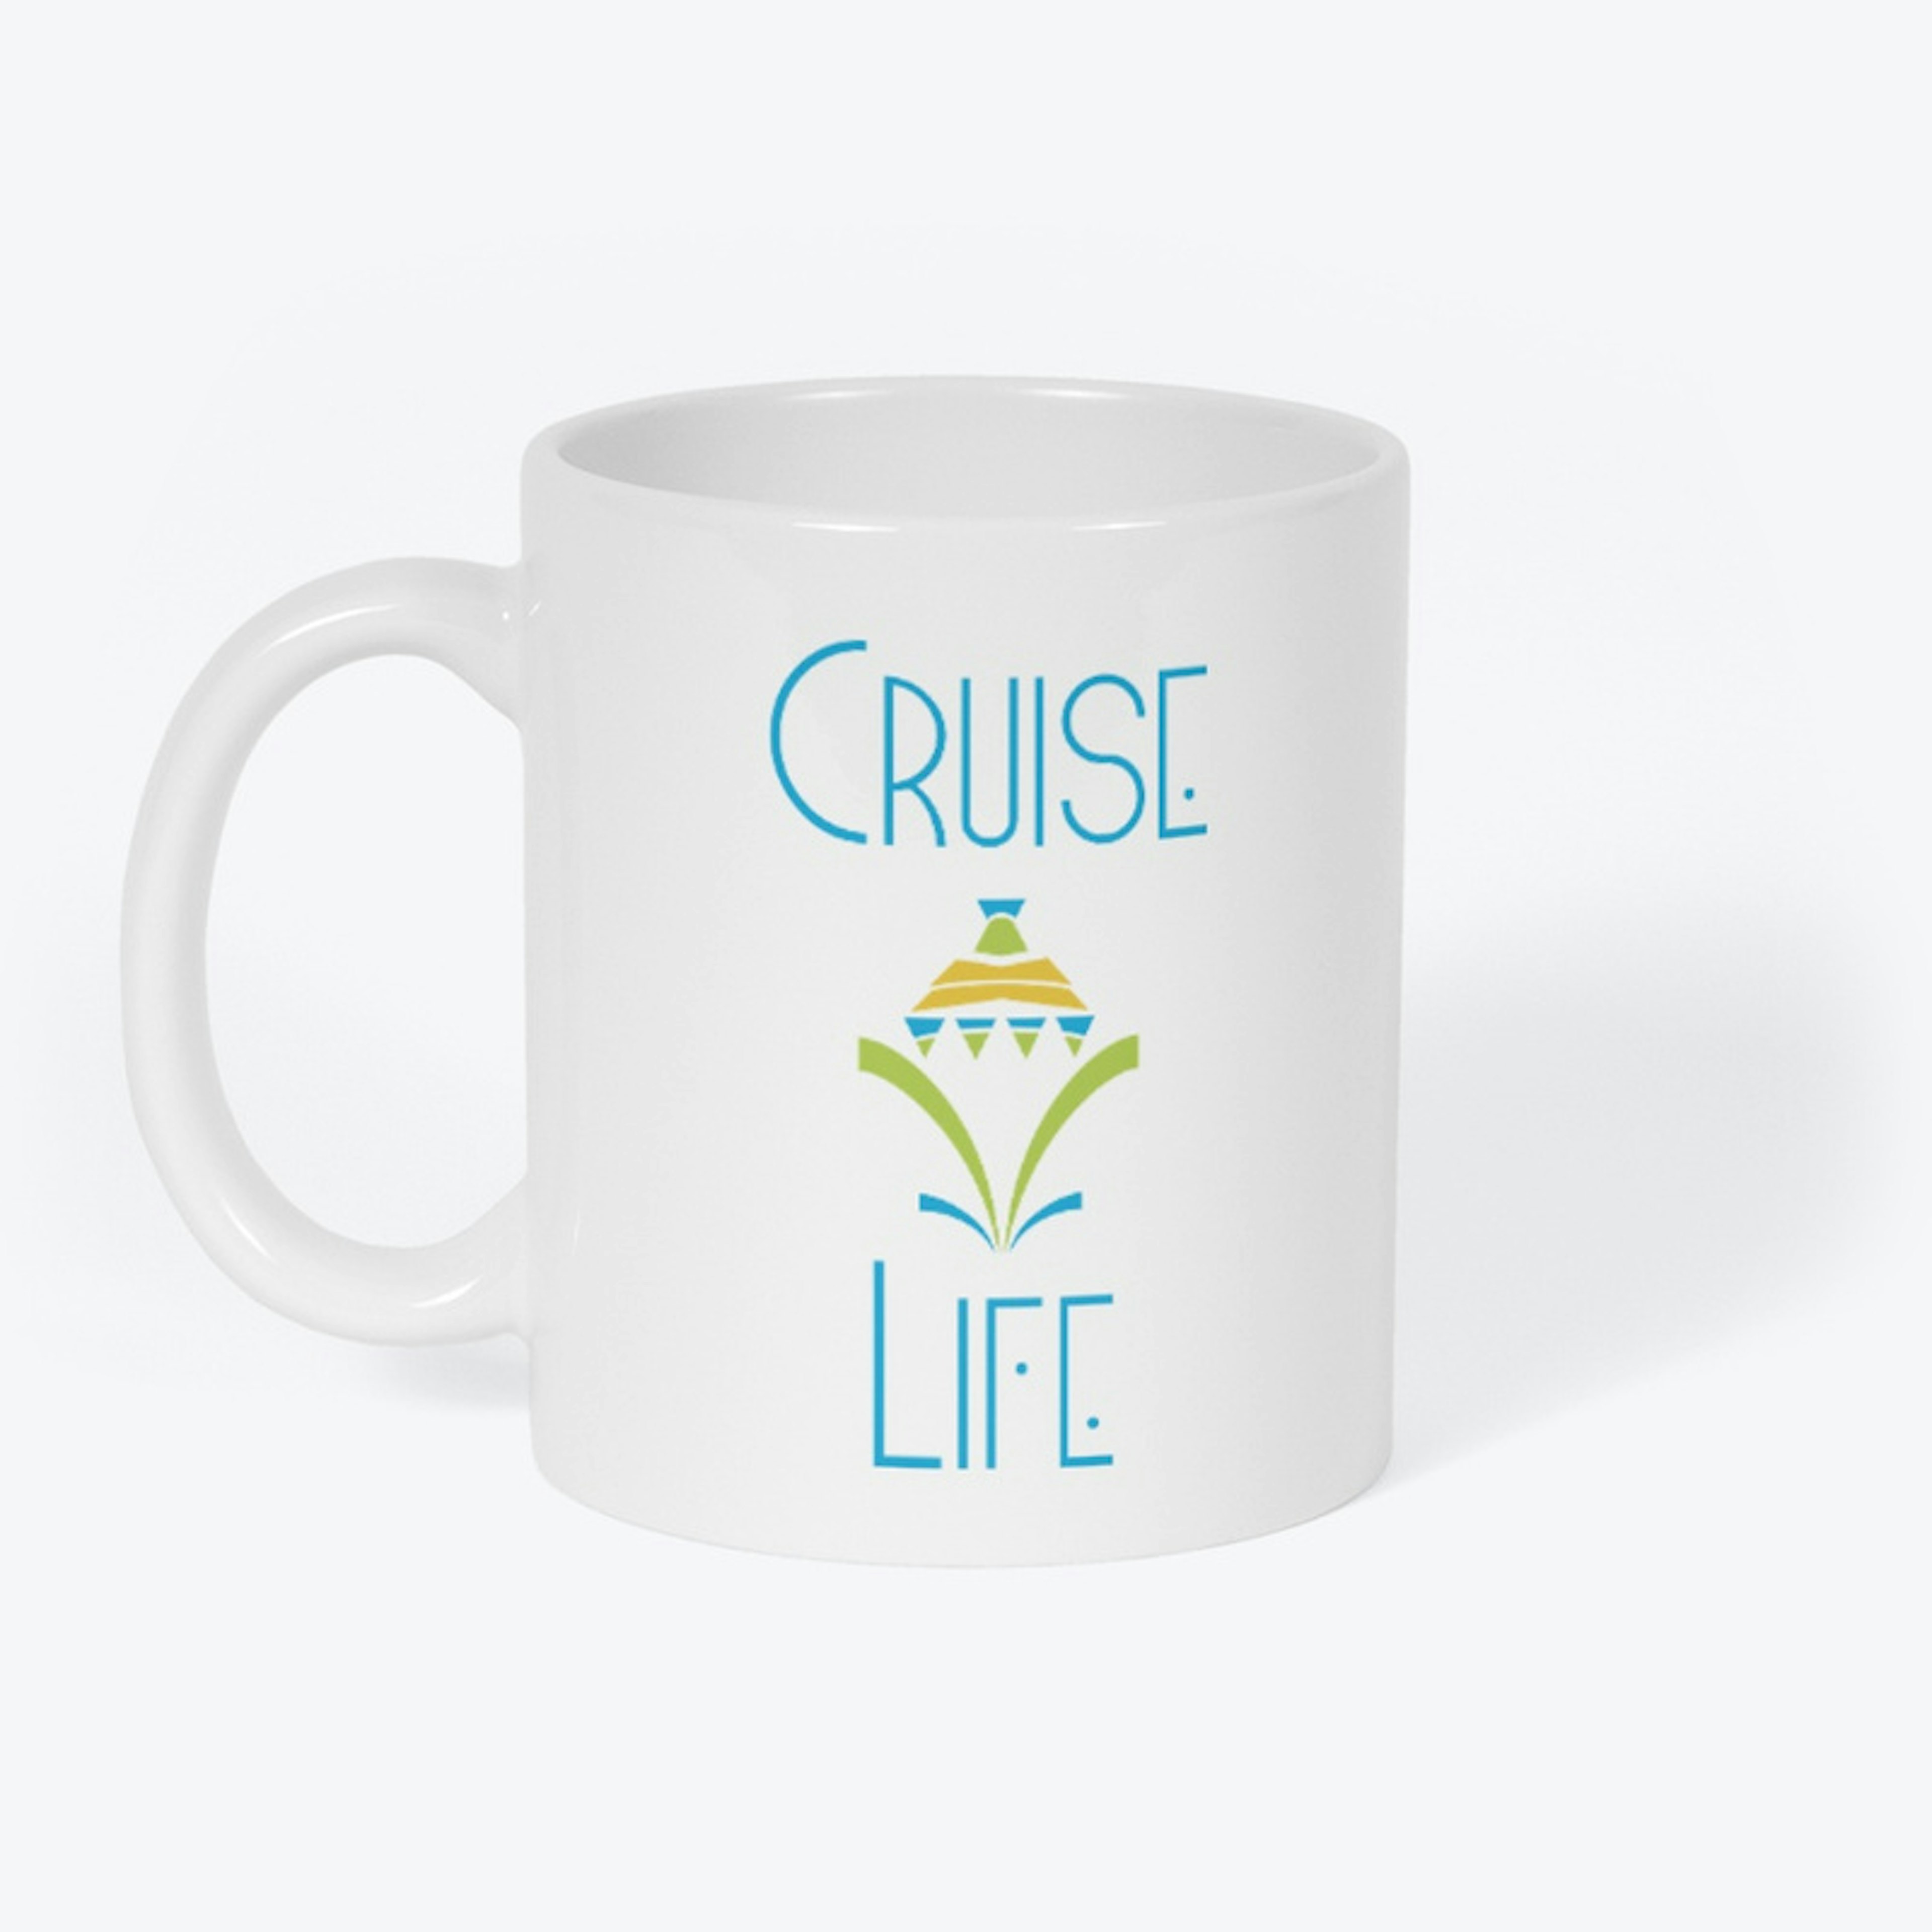 Cruise Life Collection Mug